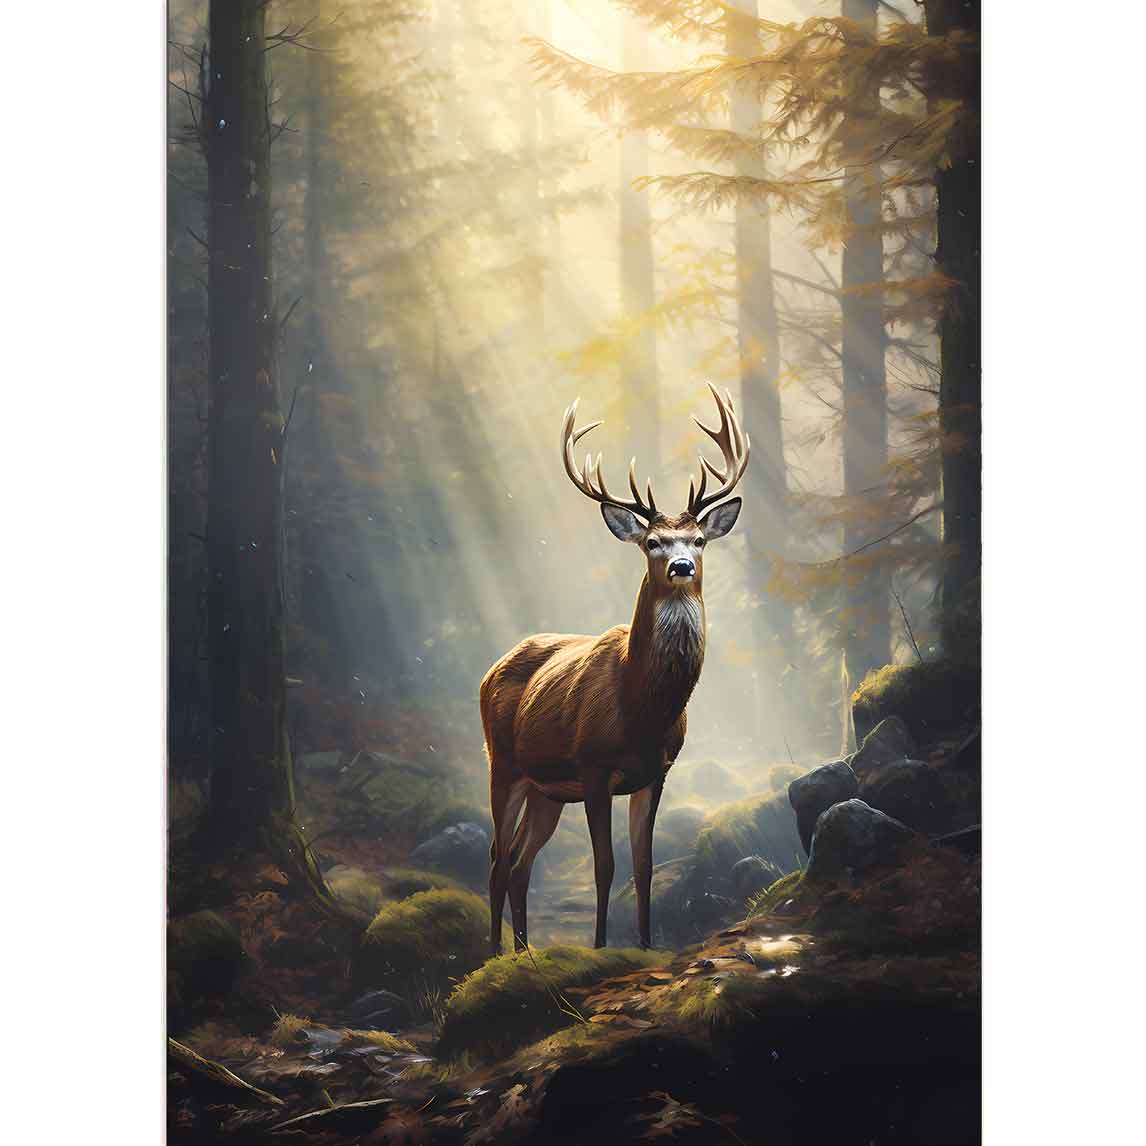 Hirsch im Wald, die Sonne strahlt auf ihn